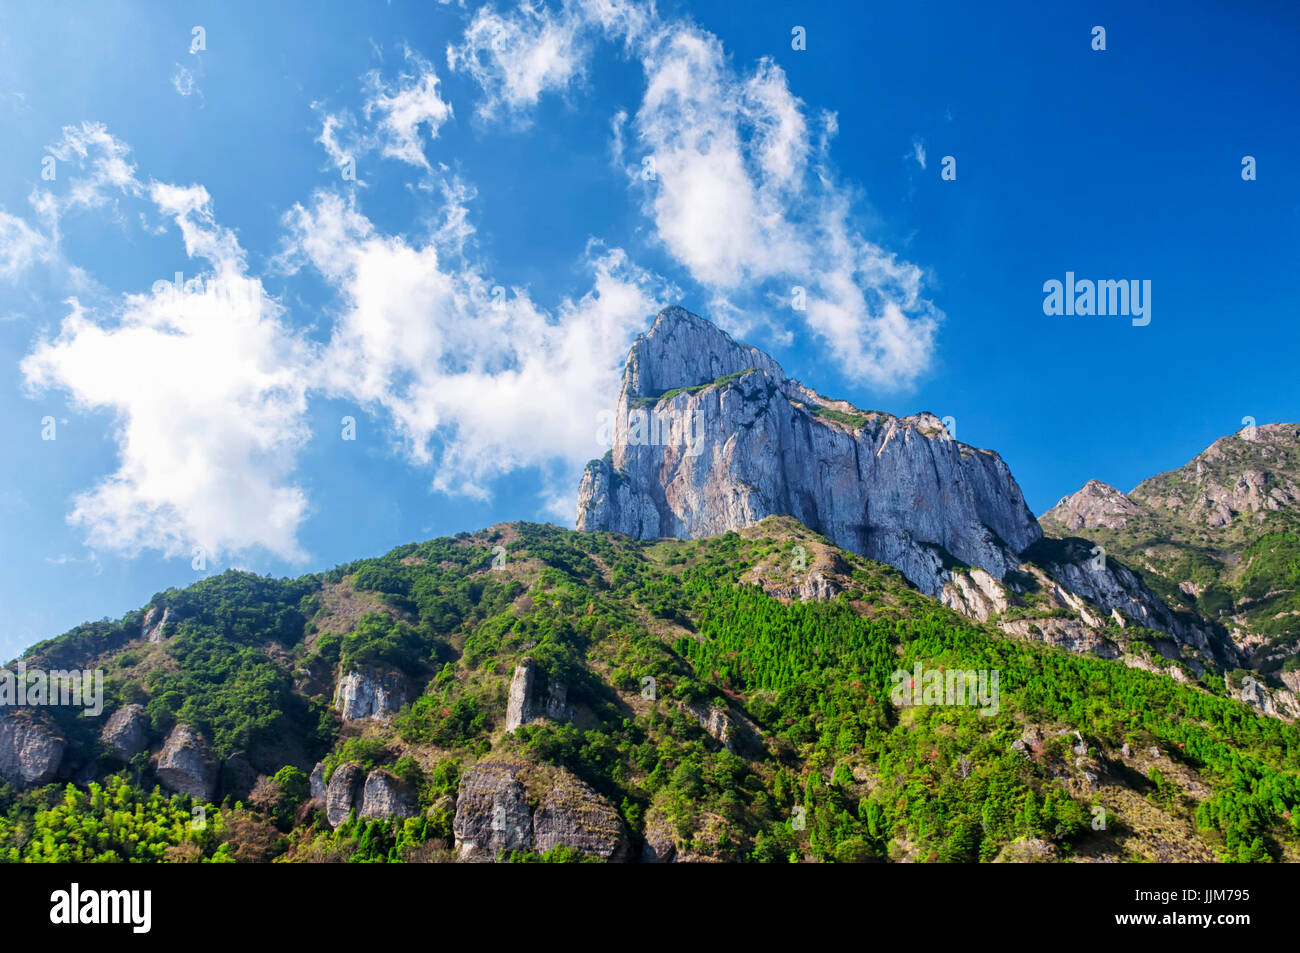 Guanying Spitze Berge in das Naturgebiet Fangdong der Yandangshan befindet sich in der Provinz Zhejiang China. Stockfoto